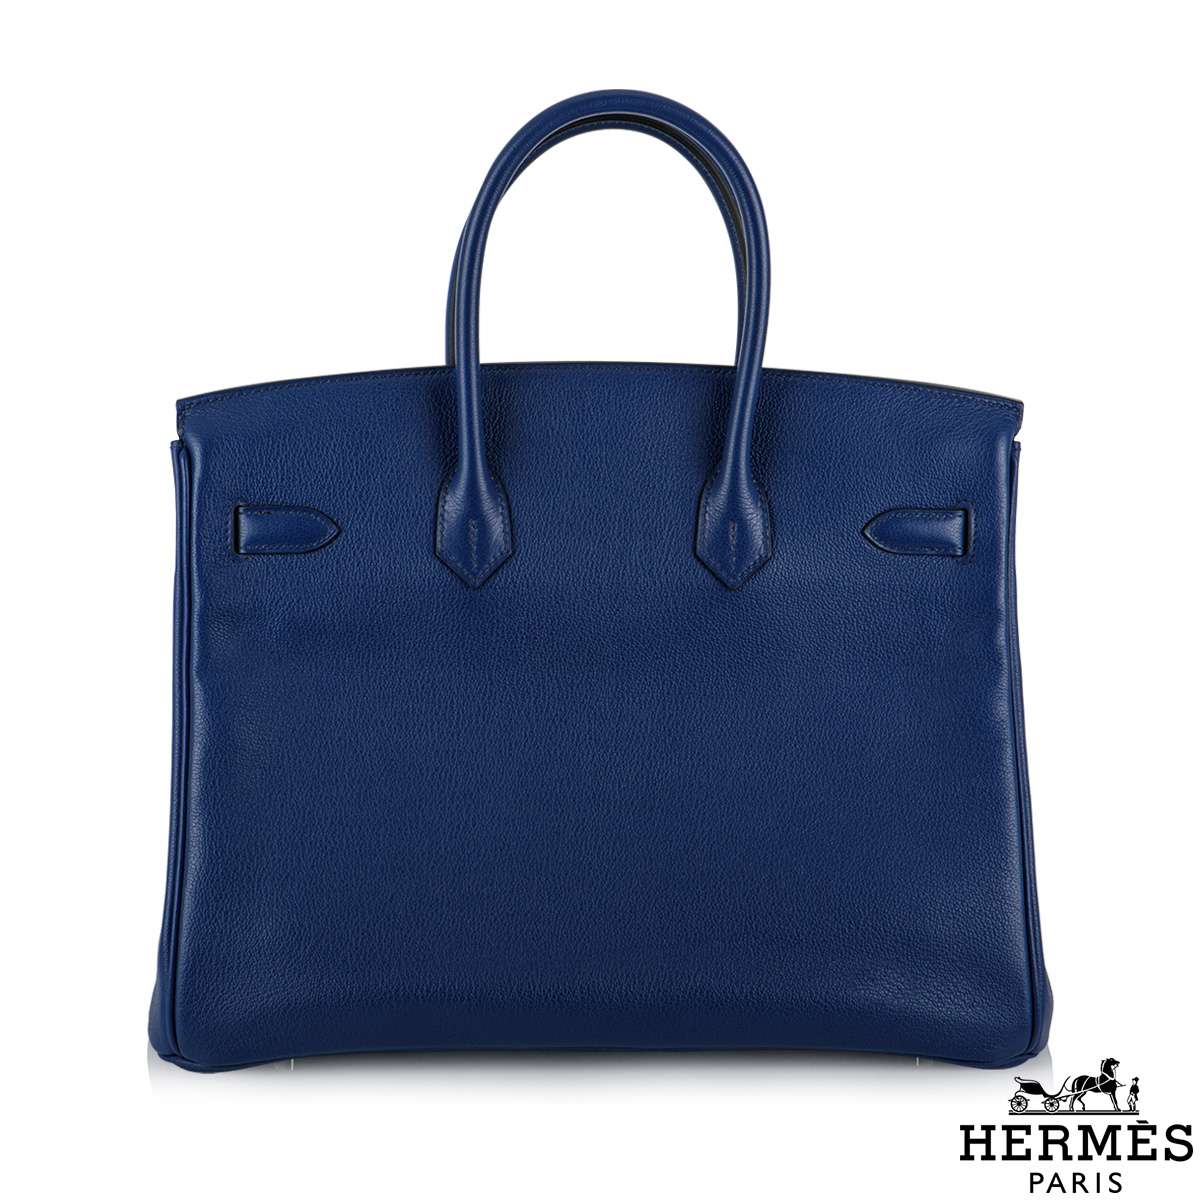 Hermés 35 cm Birkin Handbag